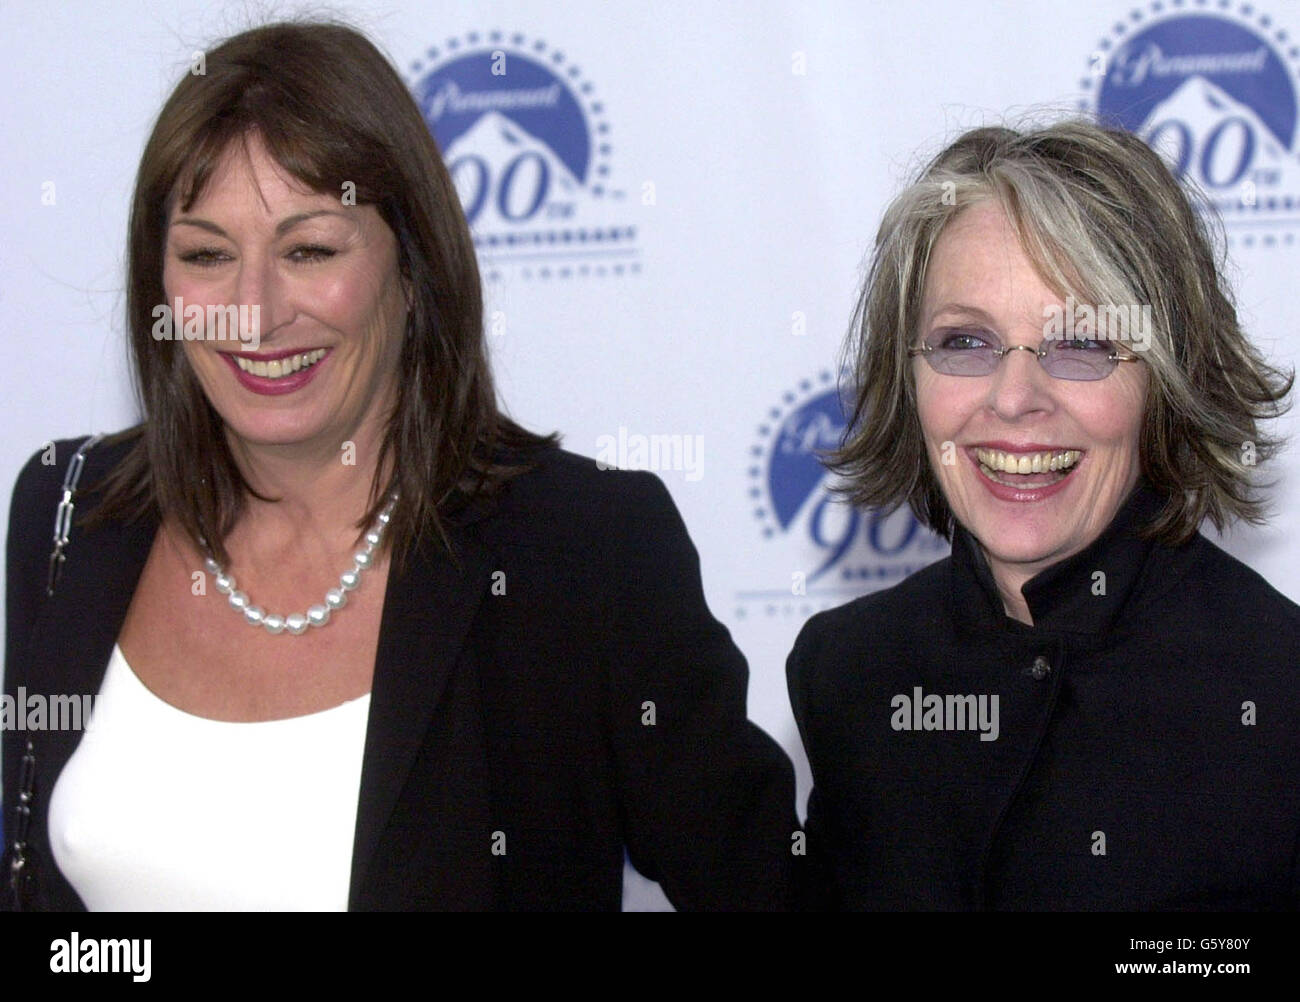 Die Schauspielerinnen Anjelica Huston (links) und Diane Keaton kommen zur Paramount Pictures 90. Anniversary Party in Los Angeles. Stockfoto